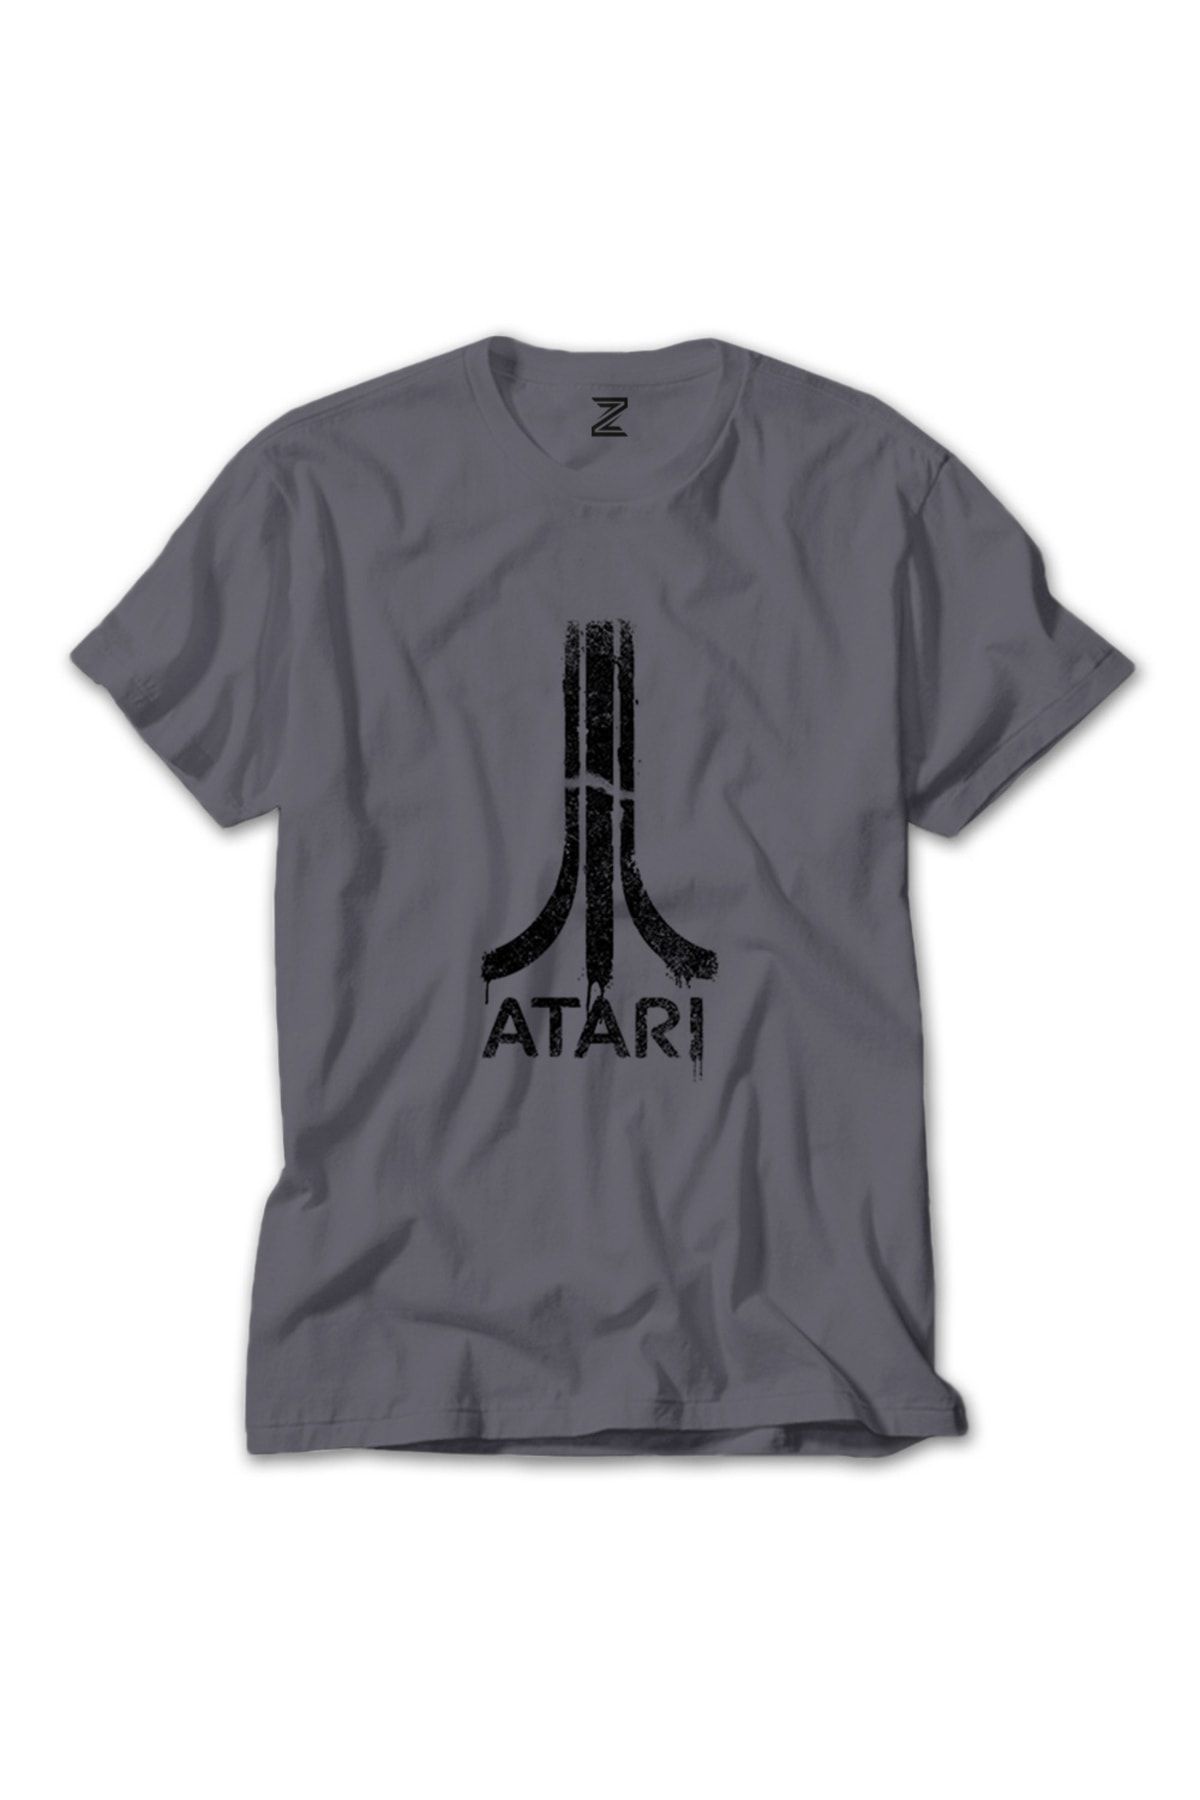 Z zepplin Atari Splash Gri Tişört